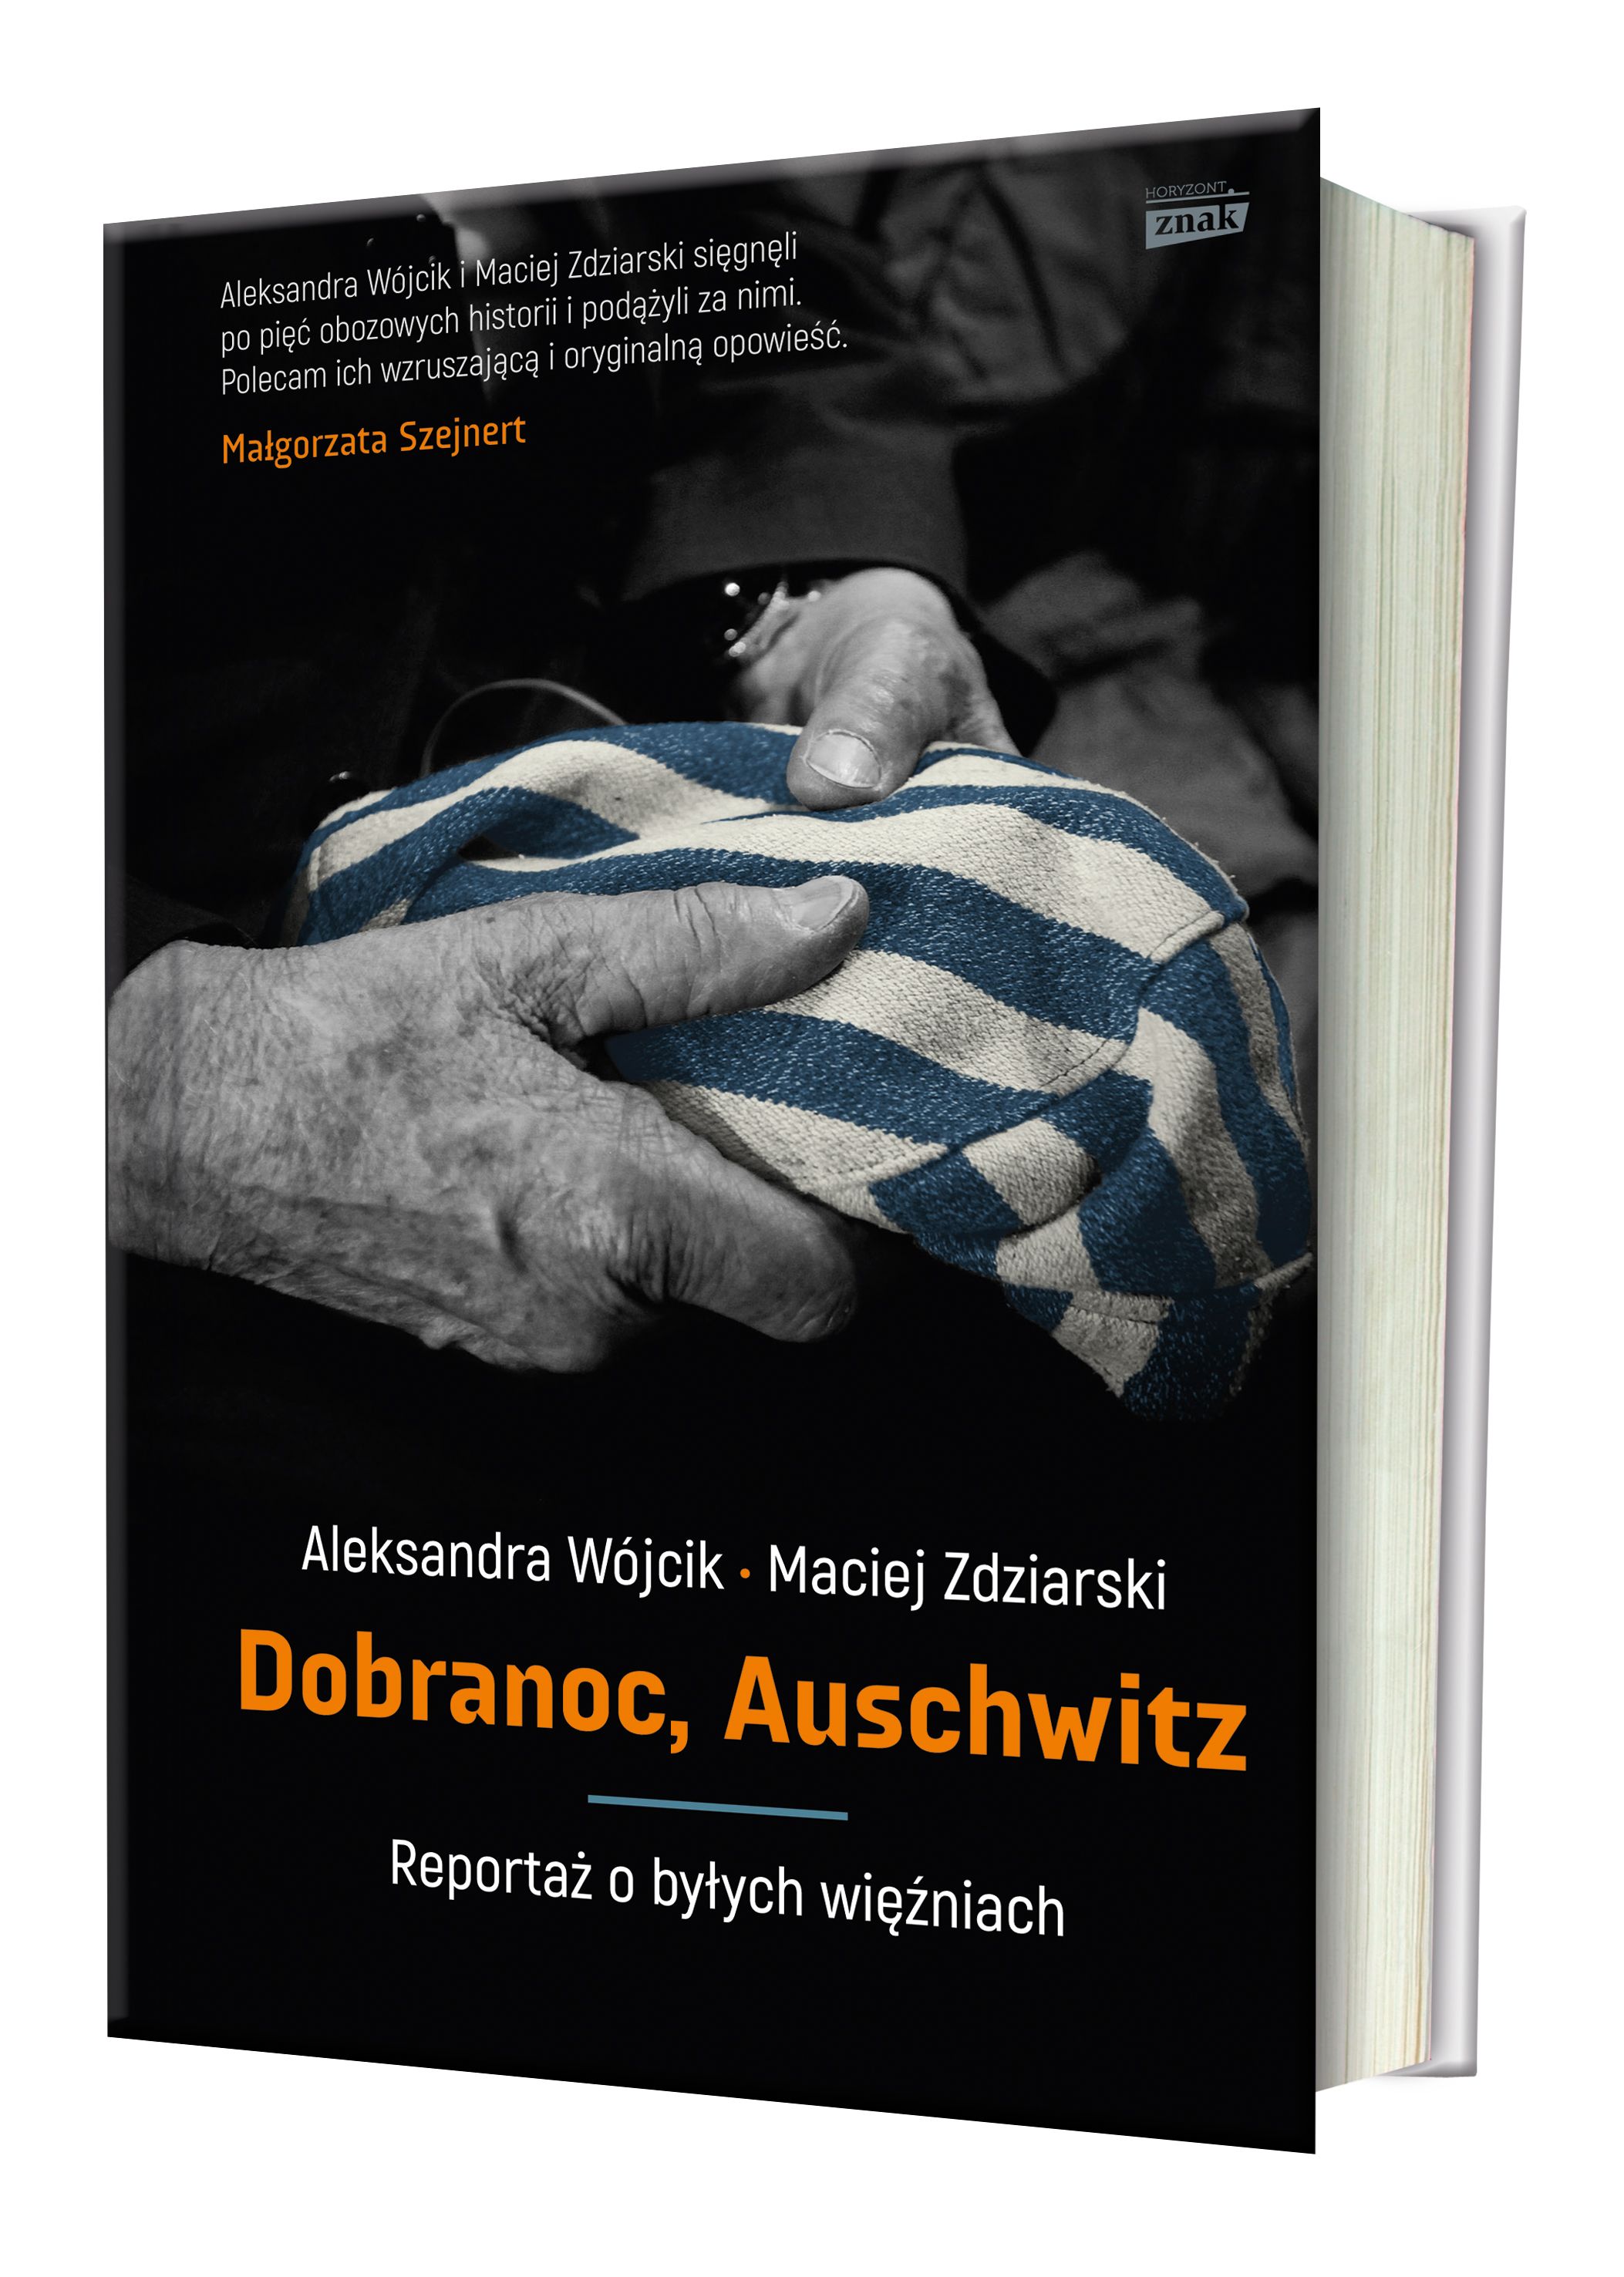 Poruszające historie tych, którzy przeżyli Auschwitz, znajdziecie w książce Aleksandry Wójcik i Macieja Zdziarskiego "Dobranoc, Auschwitz. Reportaż o byłych więźniach", która ukazała się właśnie nakładem wydawnictwa Znak Horyzont.